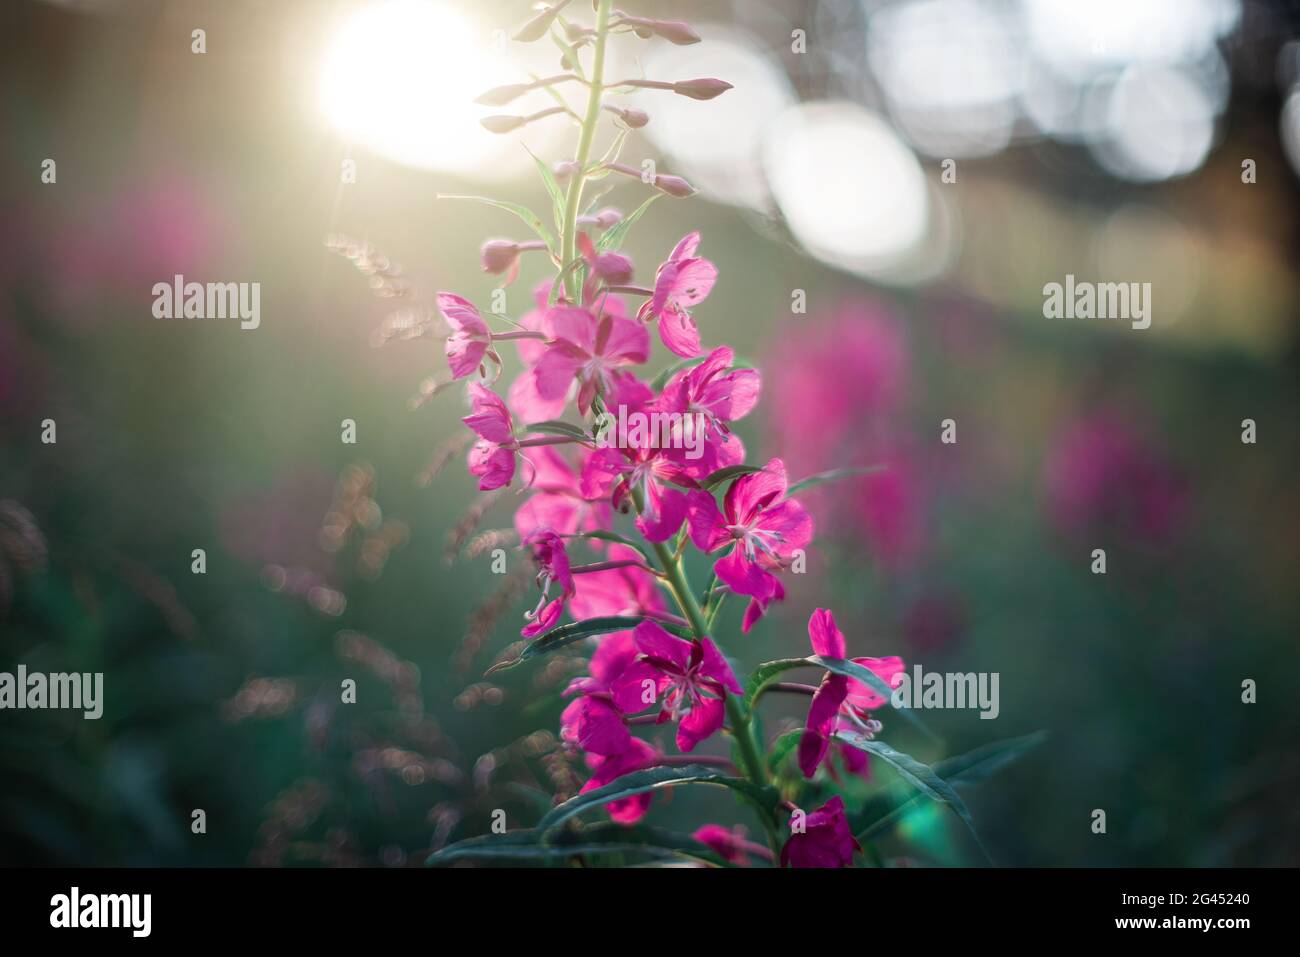 Summer wild flower lupine Stock Photo